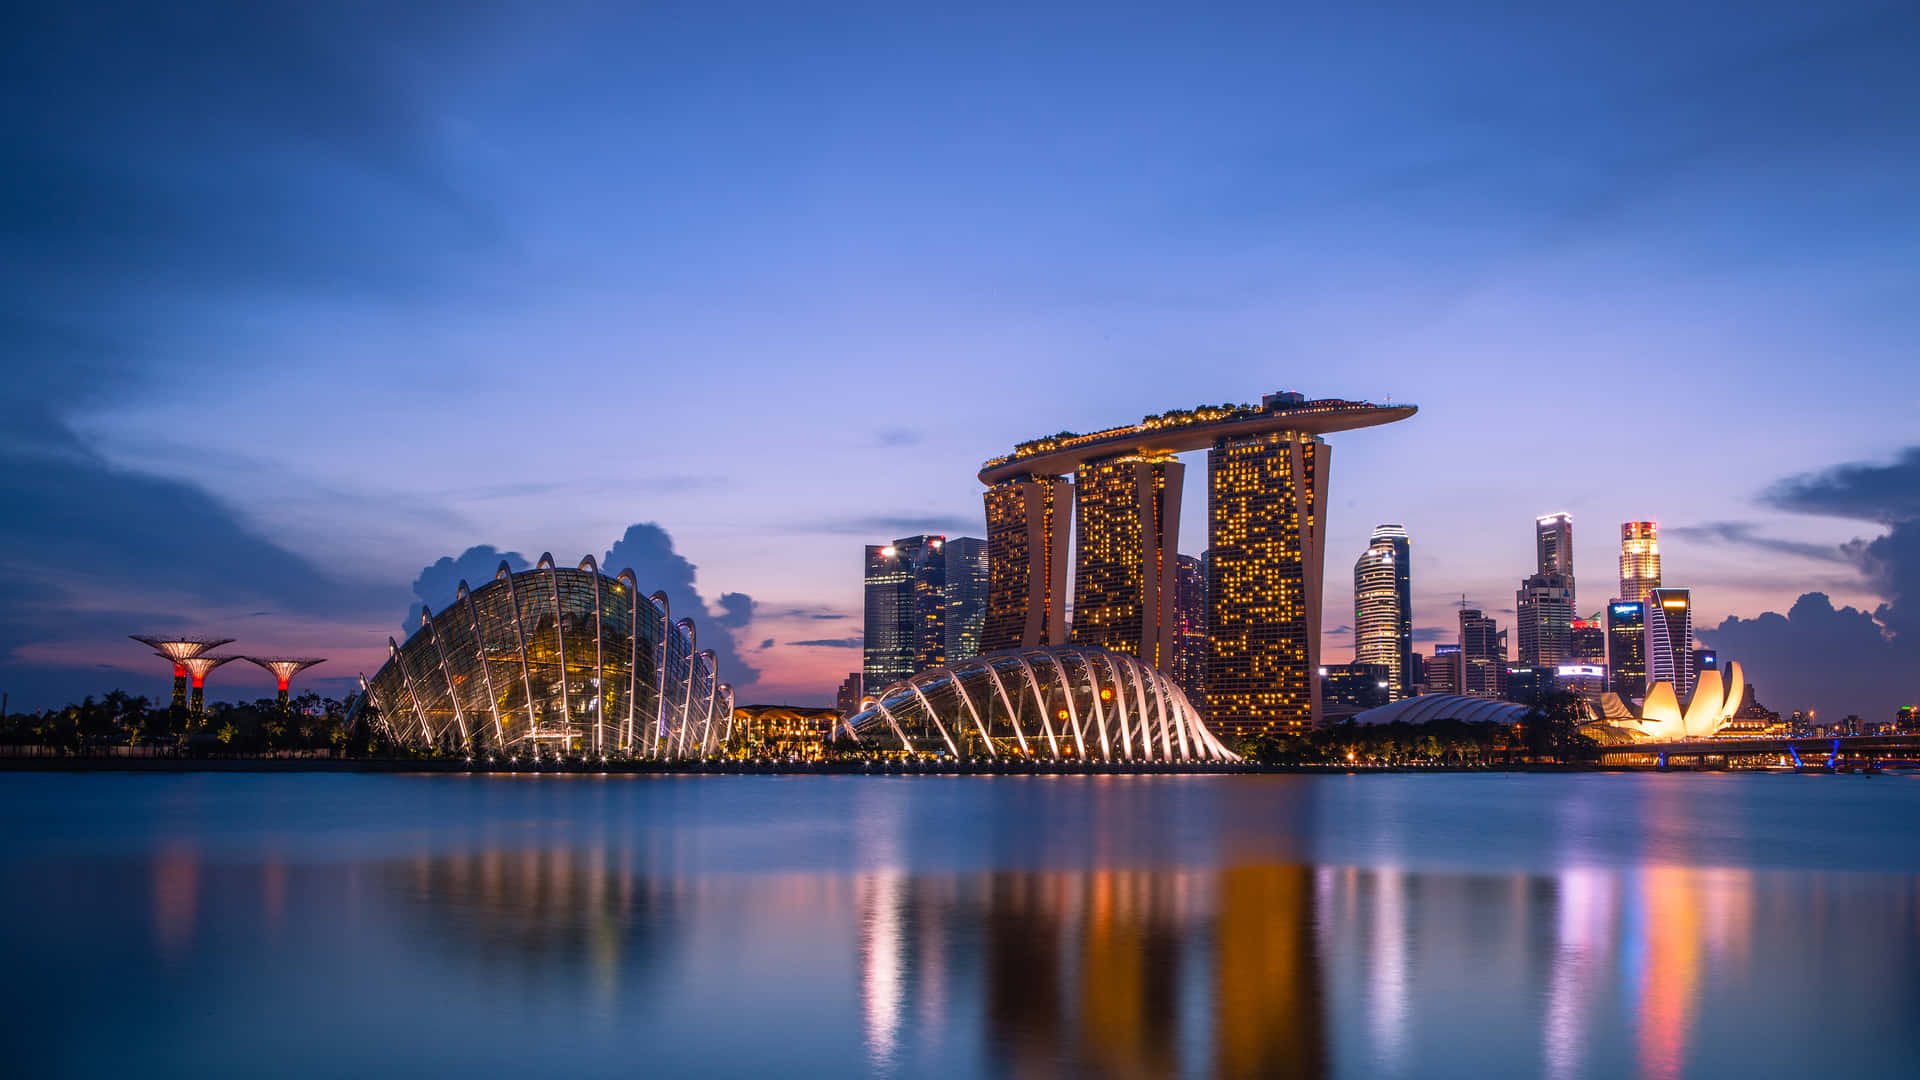 Beautiful Night Skyline of Singapore